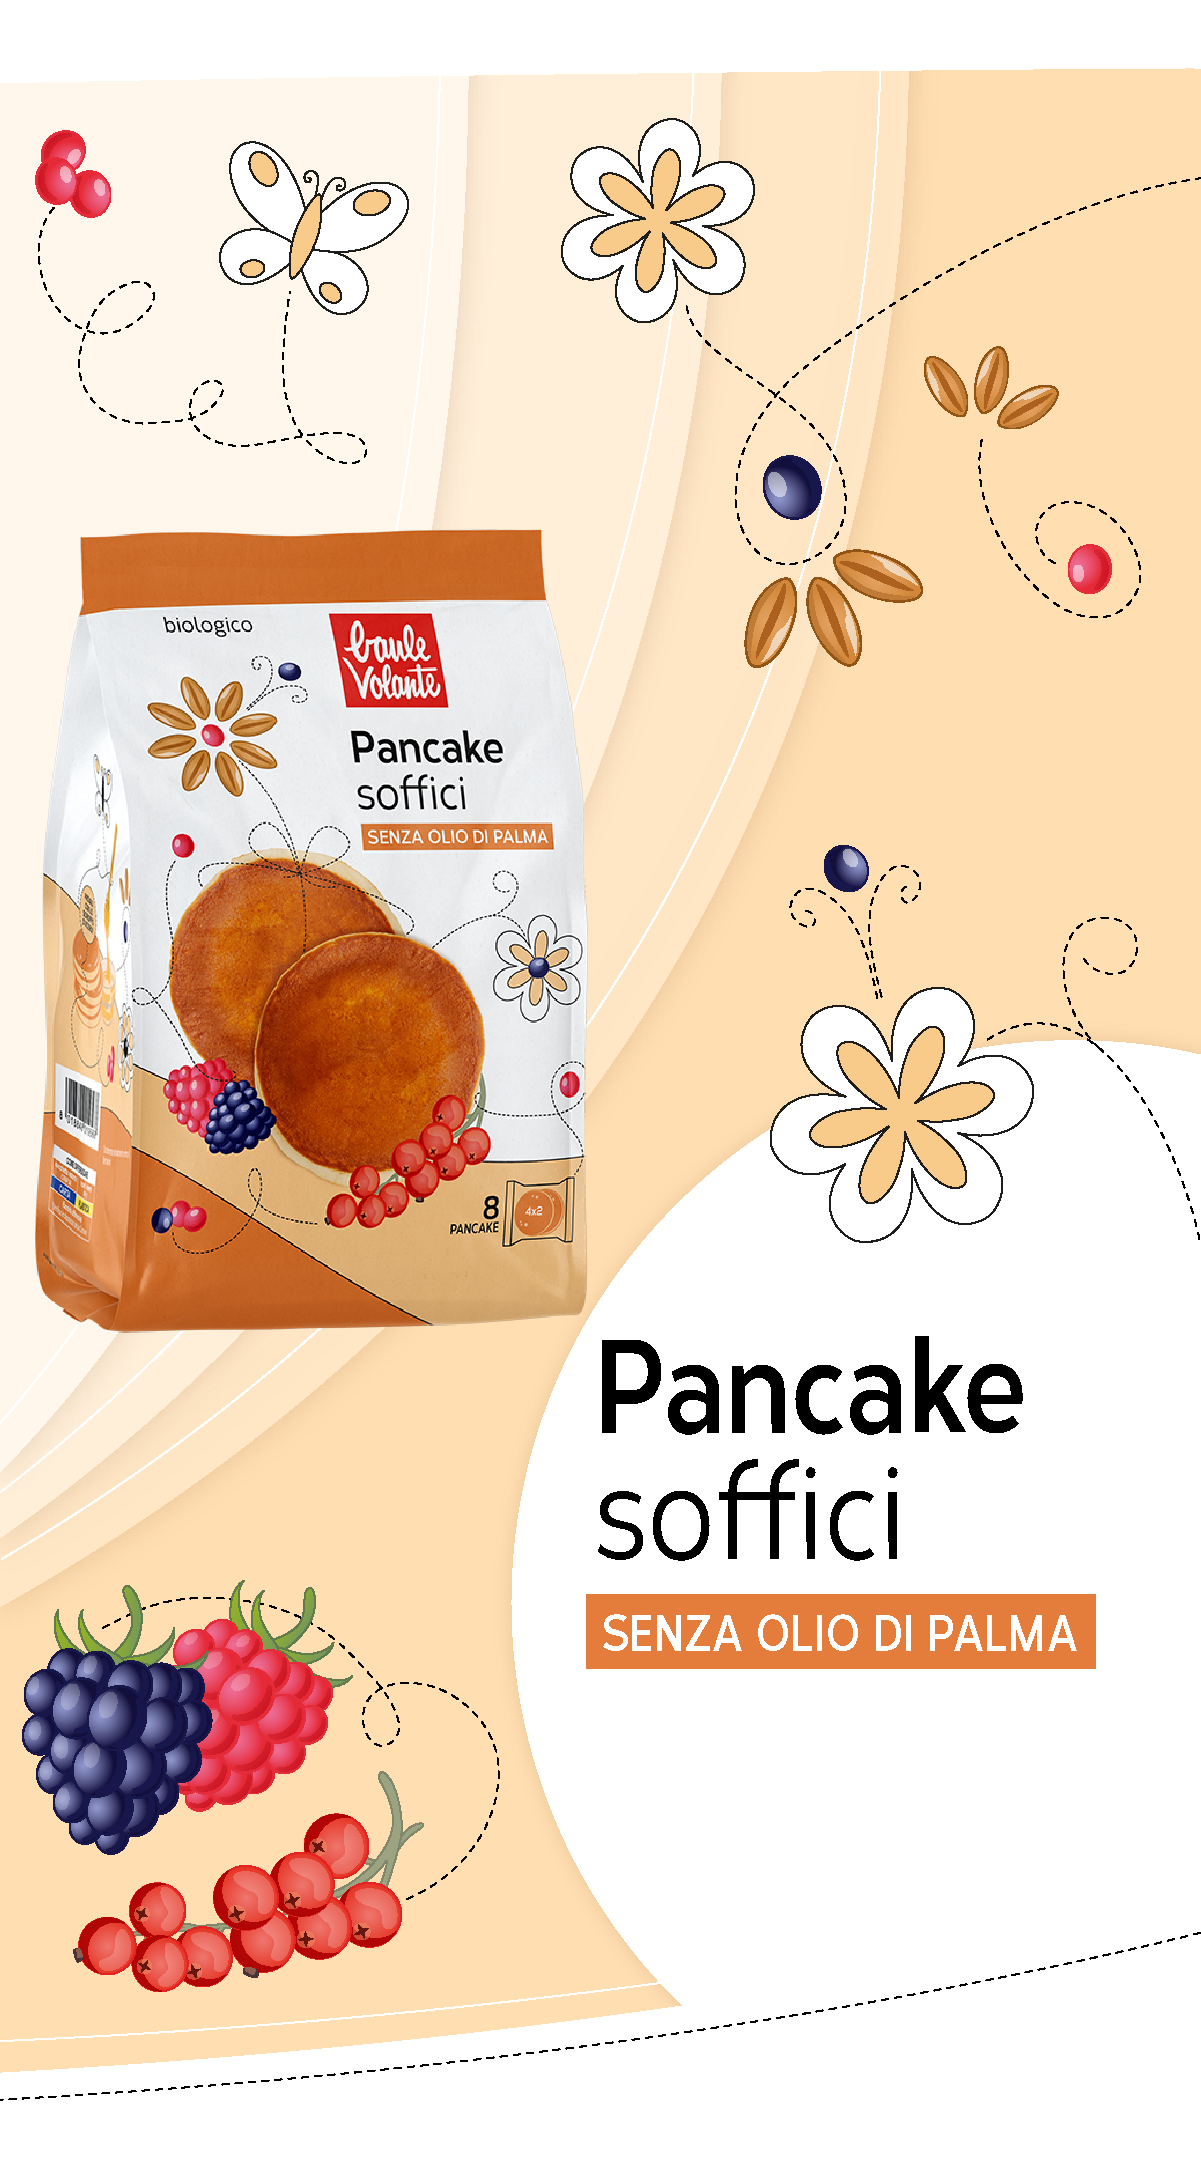 Pancake Soffici